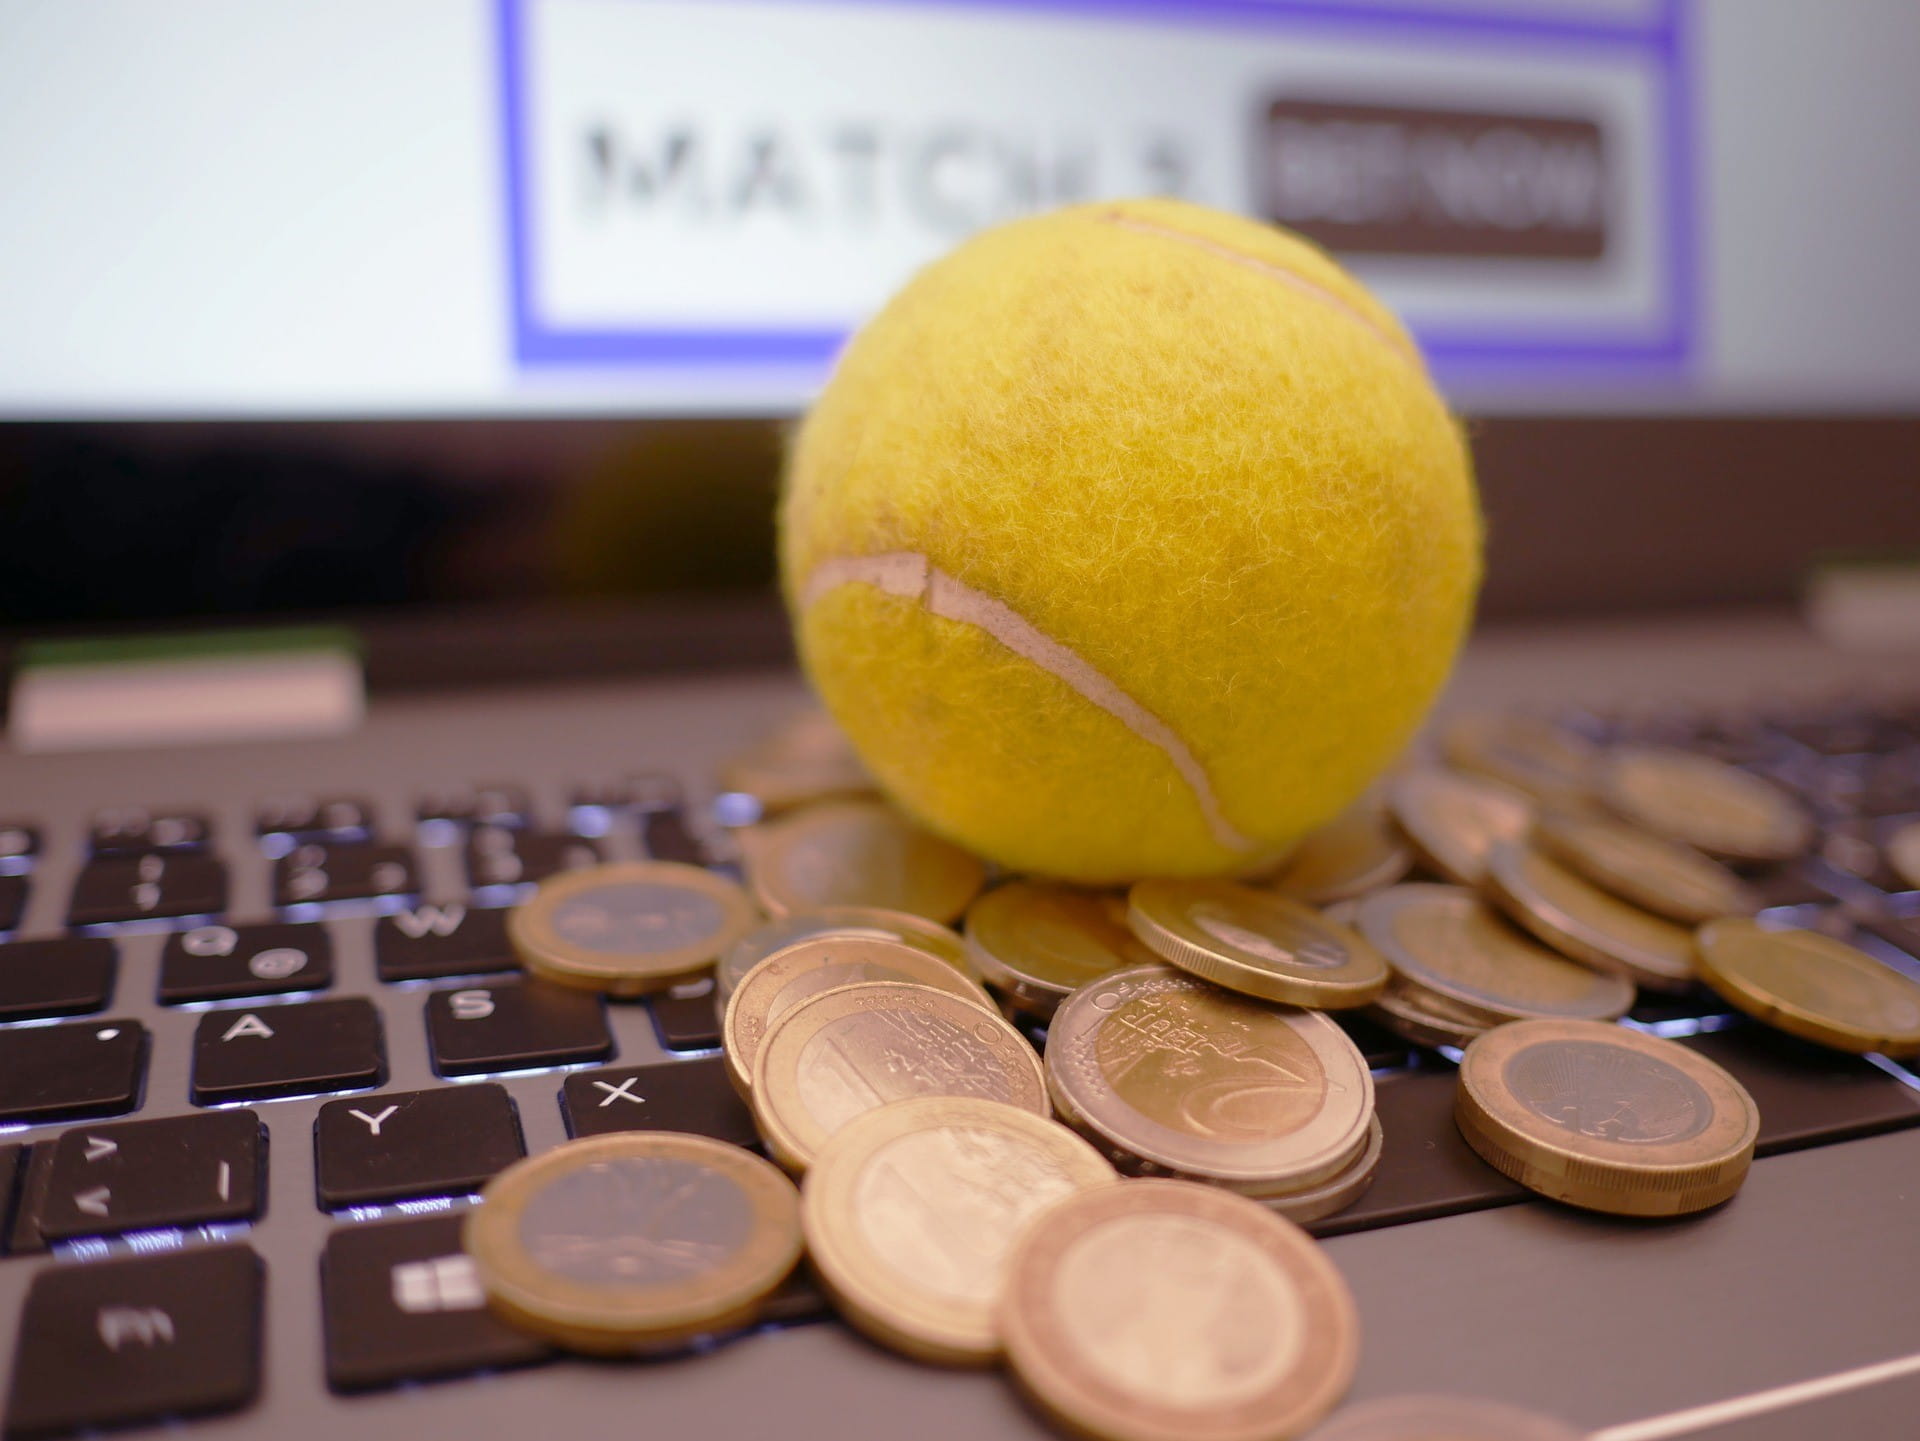 Auf einer Computertastatur liegt ein gelber Tennisball. Unter dem Ball liegen viele 1- und 2-Euro-Münzen.